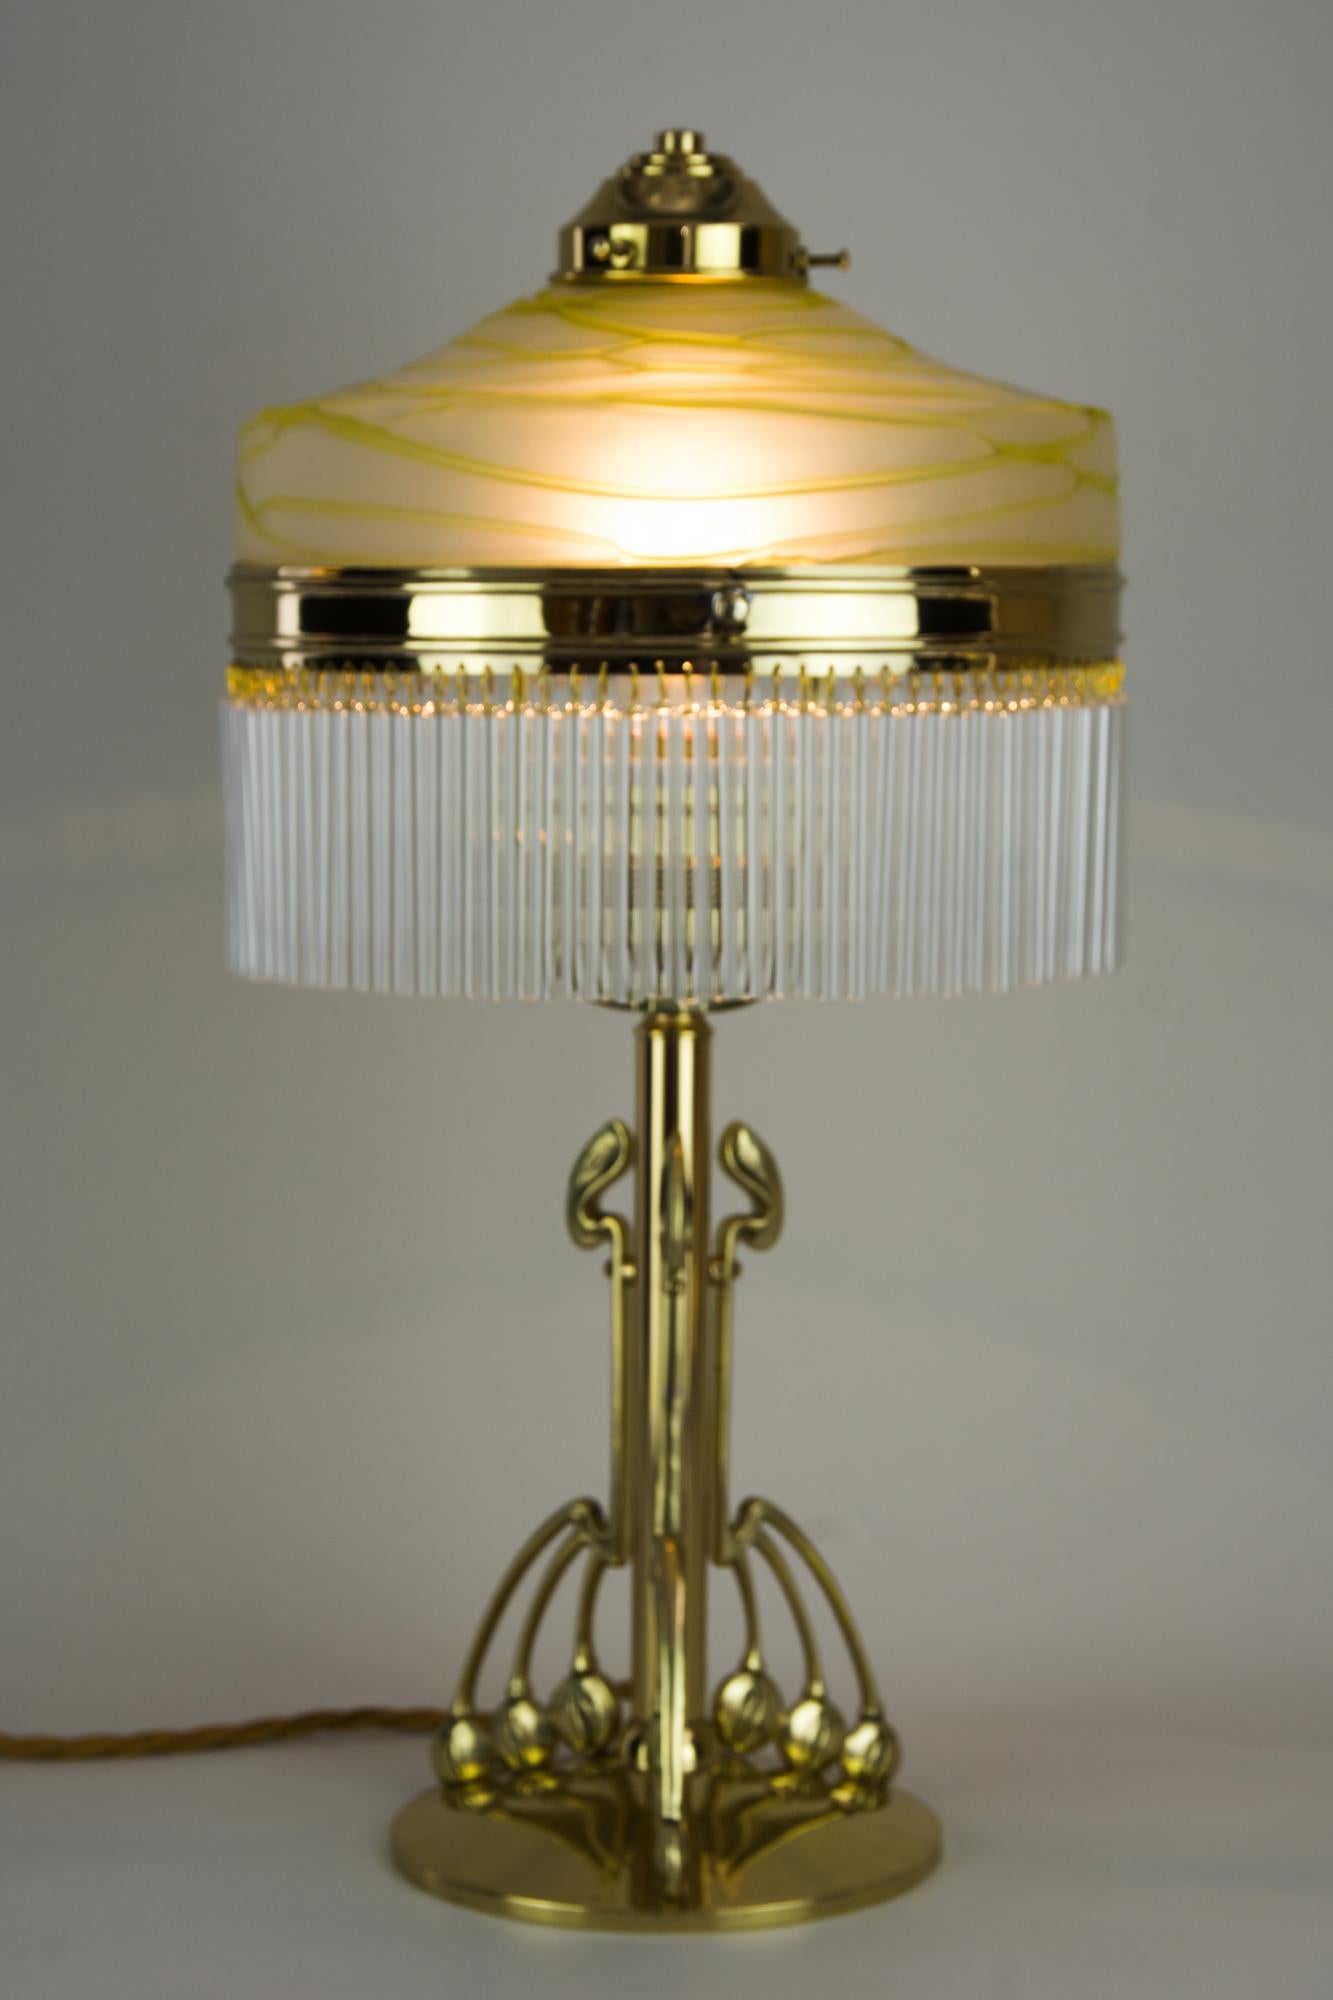 Jugendstil Table Lamp with Original 